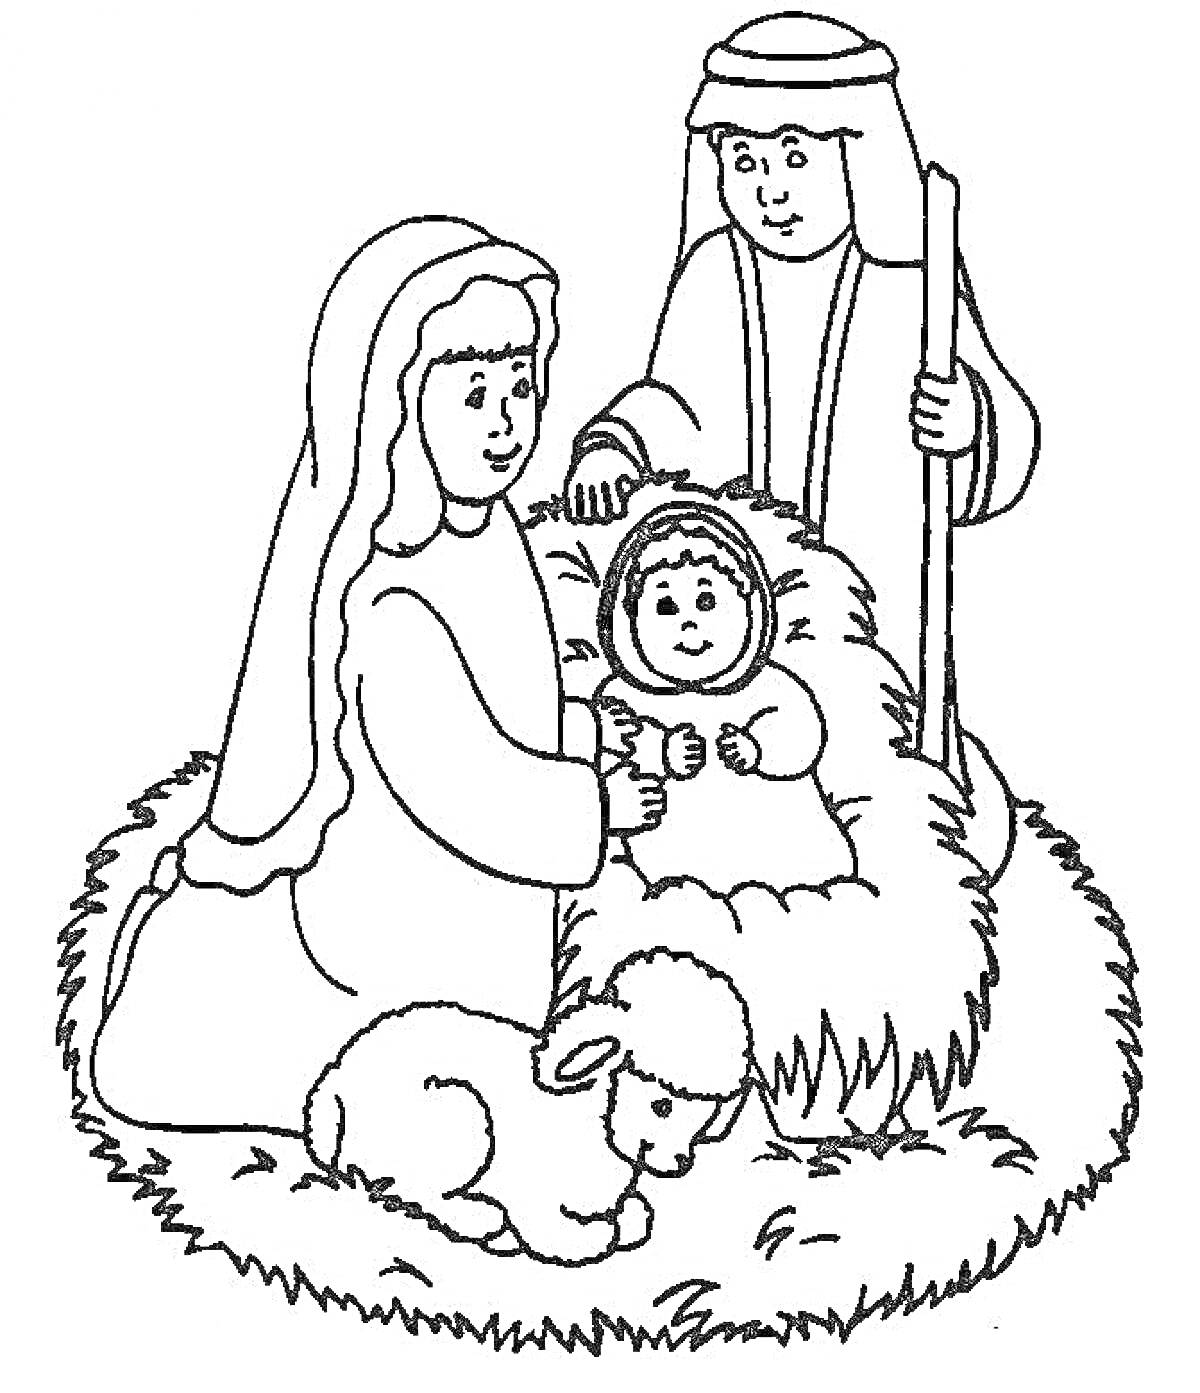 Святое семейство с младенцем Иисусом в яслях, овечка рядом